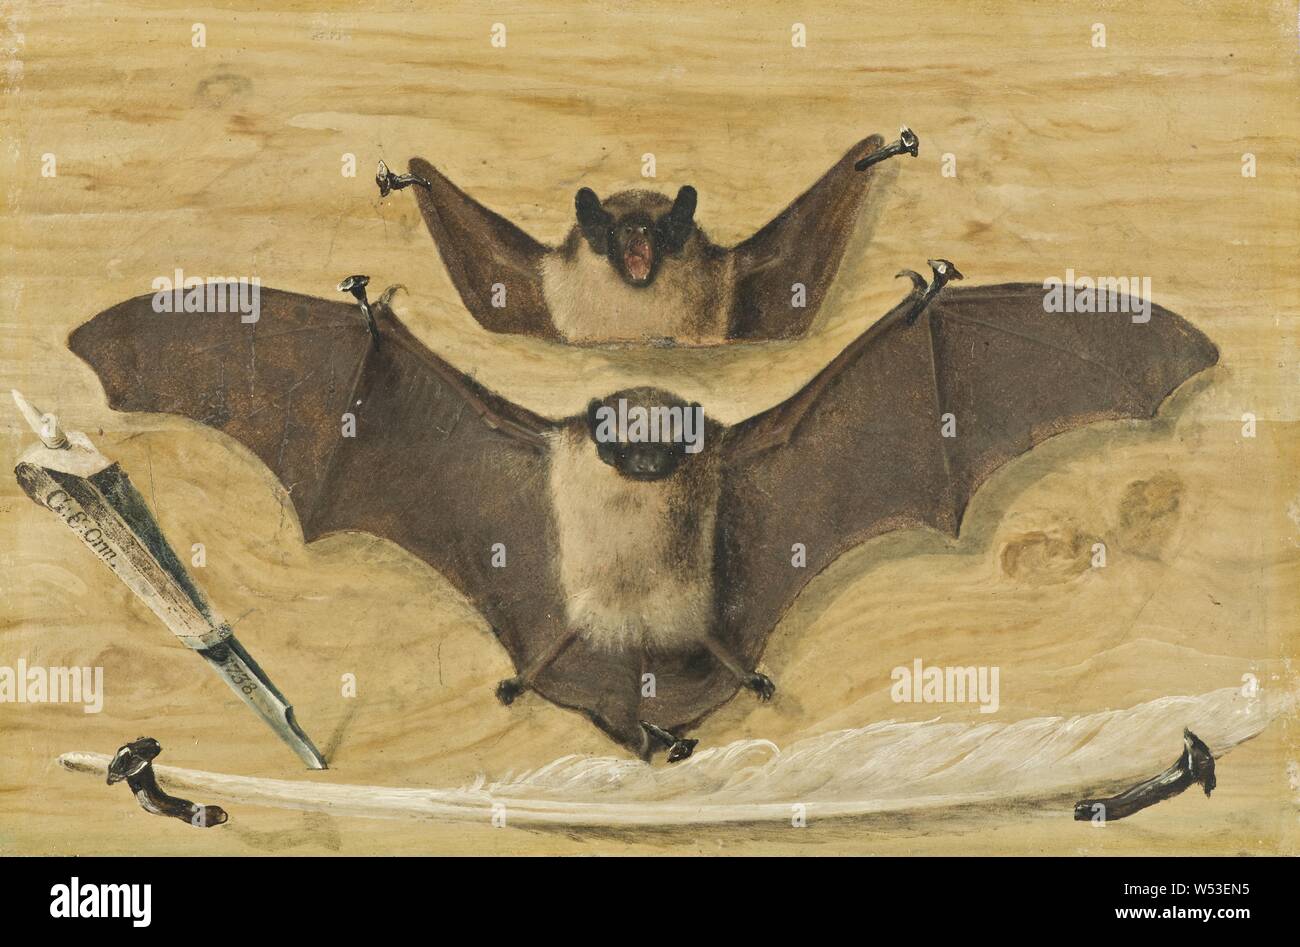 Gabriel Orm, Trompe l'oeil, deux chauves-souris clouée sur un mur de bois, couteau et plume ('la peinture Bat'), deux sur une planche avec des clous en cuir suspendue au mur des correctifs, couteau et plume, peinture, 1738, huile sur papier ou vélin montées sur métal, huile sur papier ou parchemin posés sur la plaque de fer, hauteur, 29,4 cm (11,5 pouces), Largeur 19.6 cm, (7,7 pouces), l'inscription, 174, sur papier remarque à tergo, signé, G, E, Orm 1738, sur le couteau plat, à propos de la chauve-souris Banque D'Images